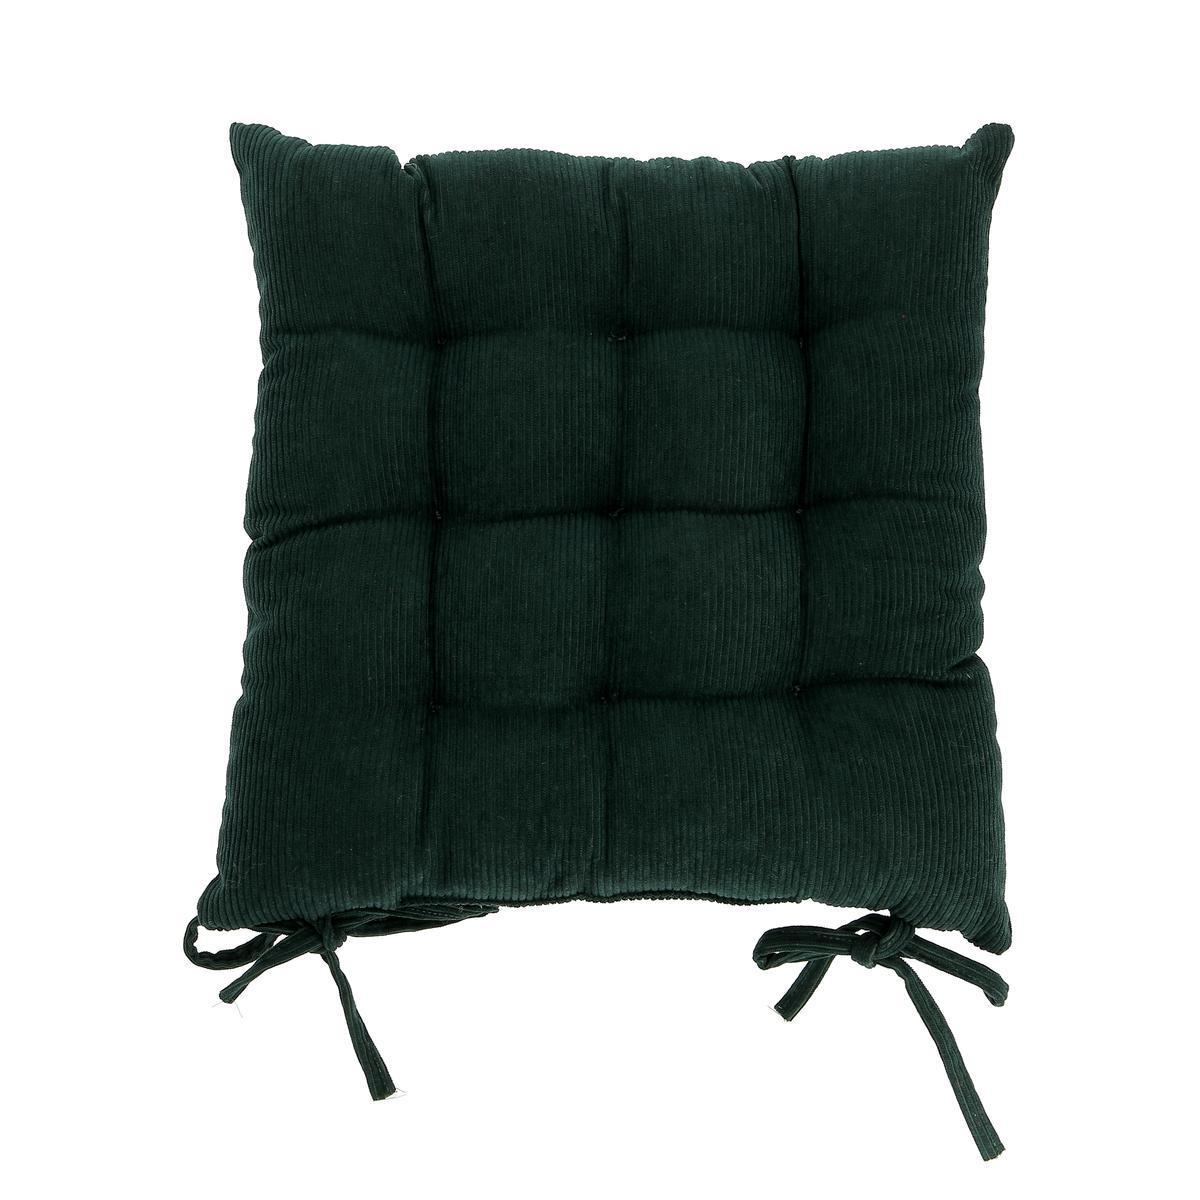 Galette de chaise - 40 X 40 cm - Noir - K.KOON